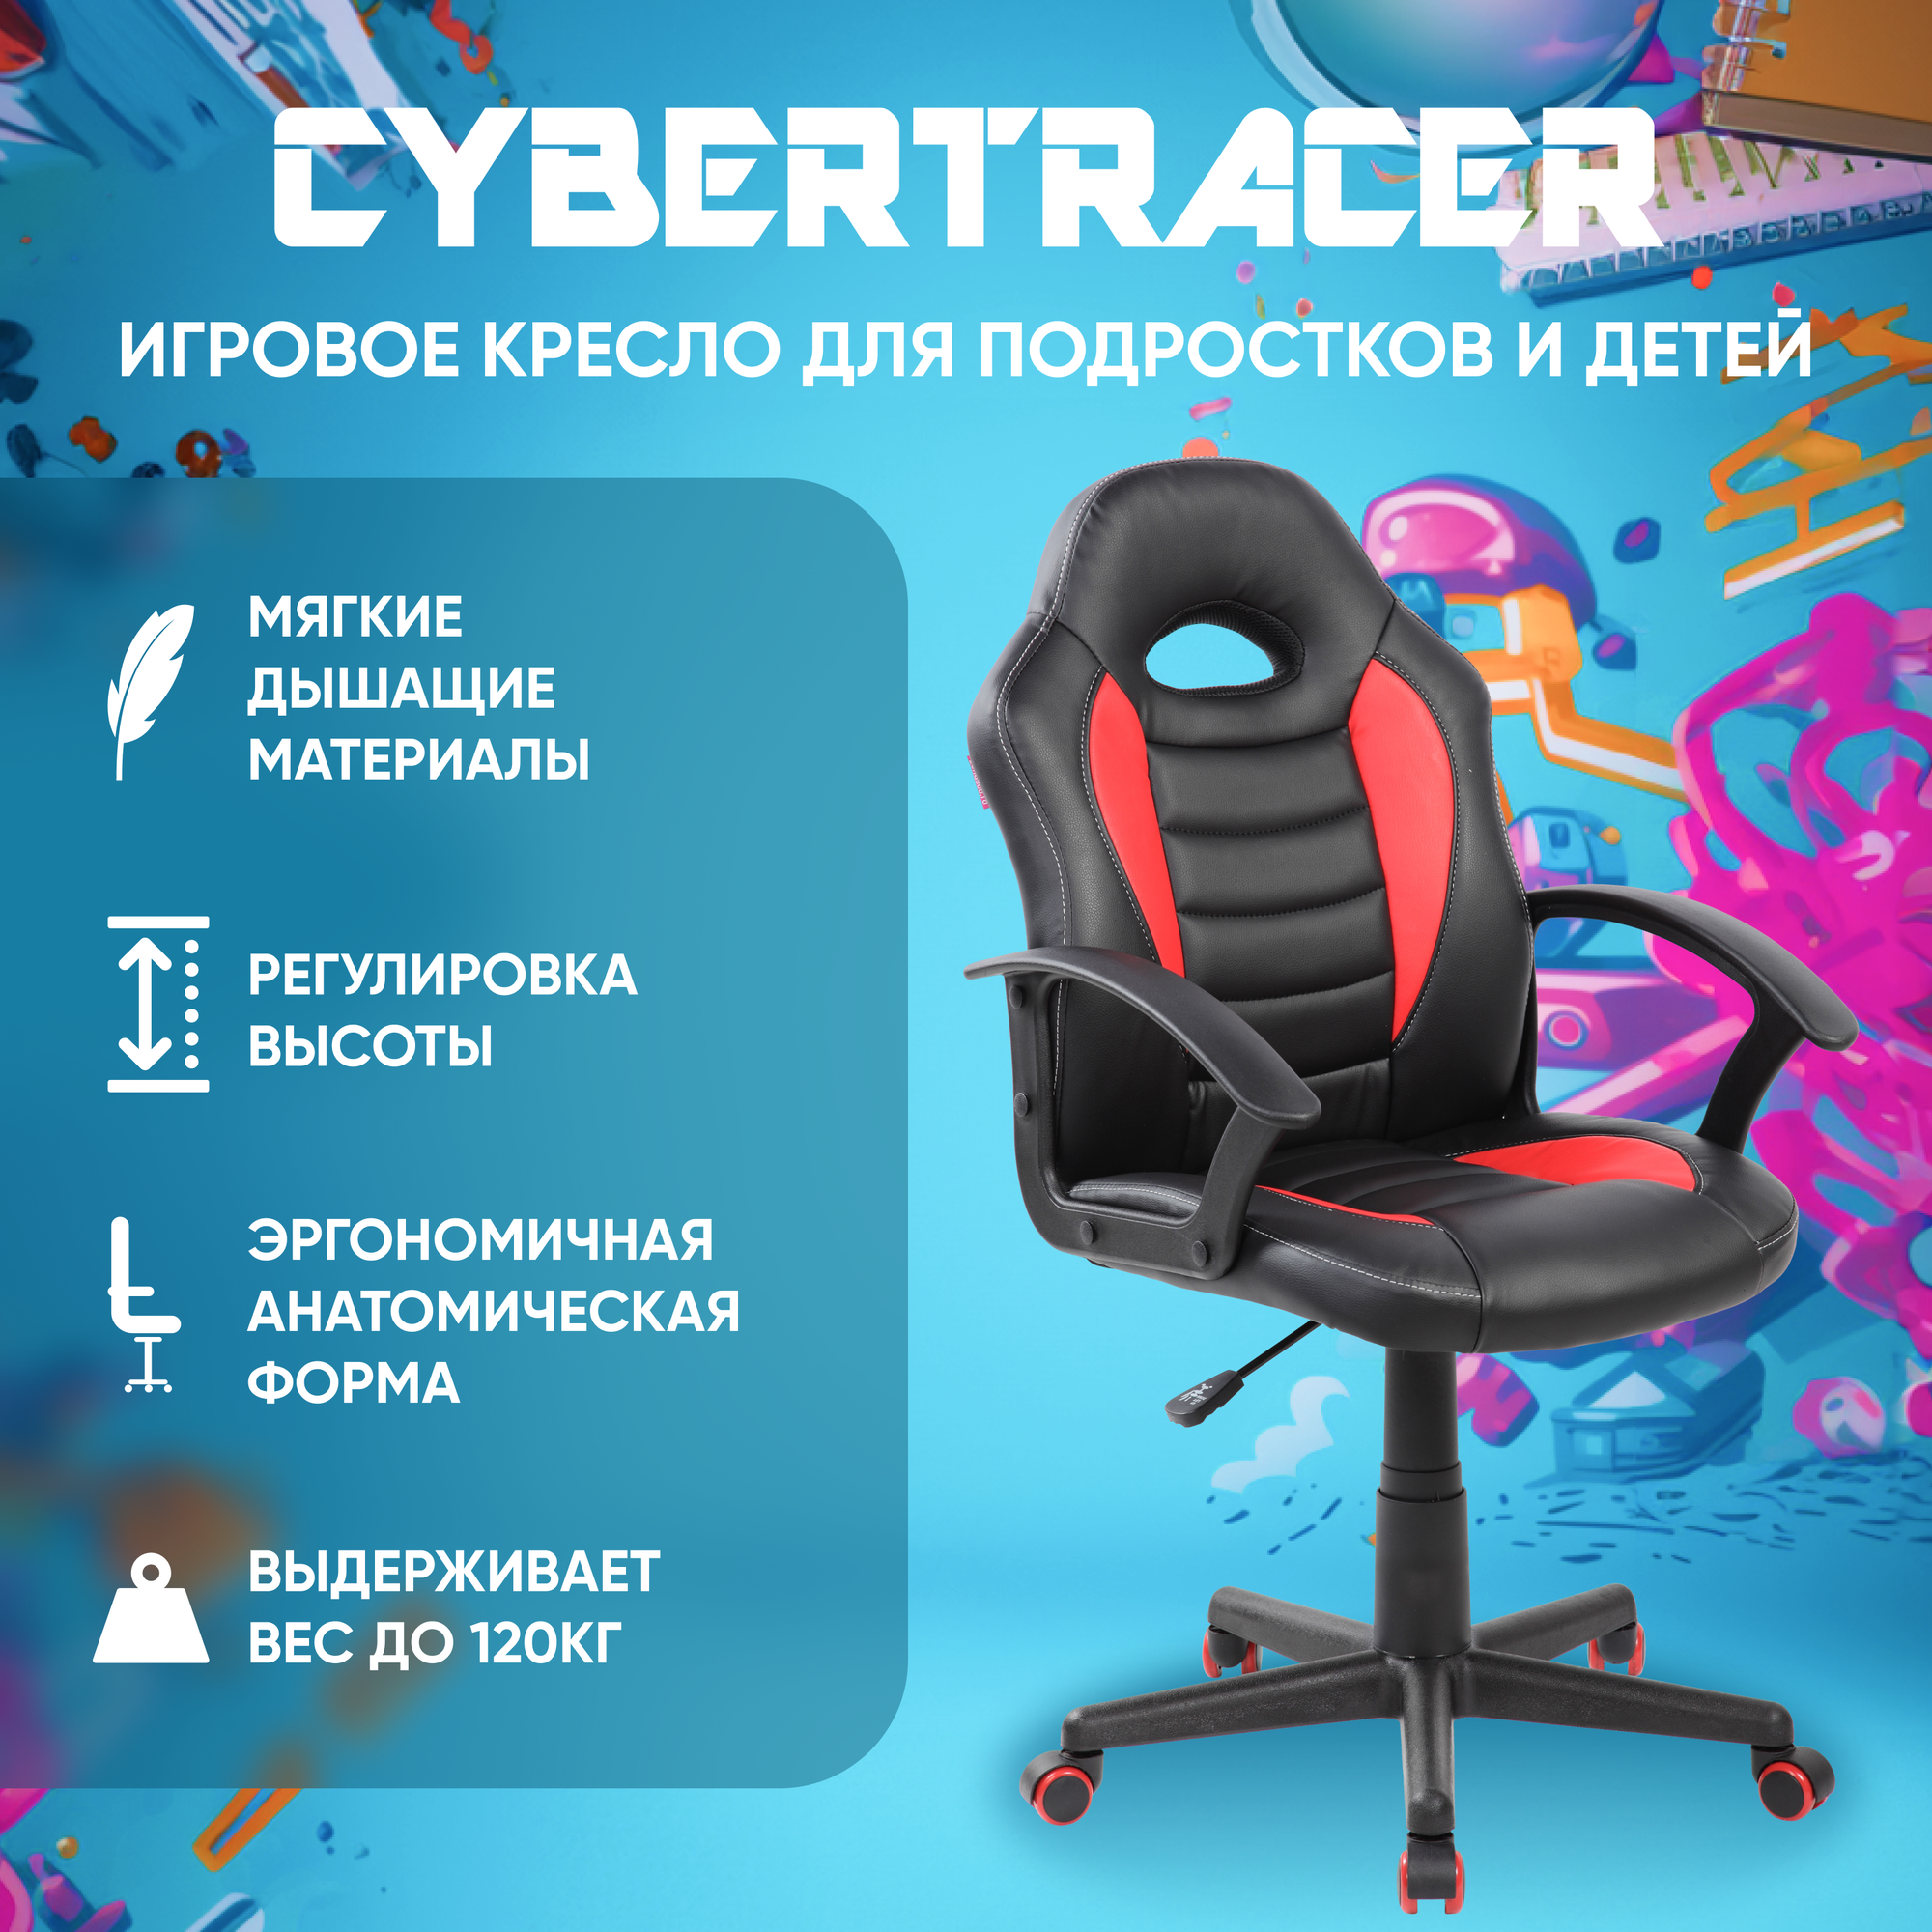 Игровое компьютерное кресло для детей и подростков CYBERTRACER черно-белое